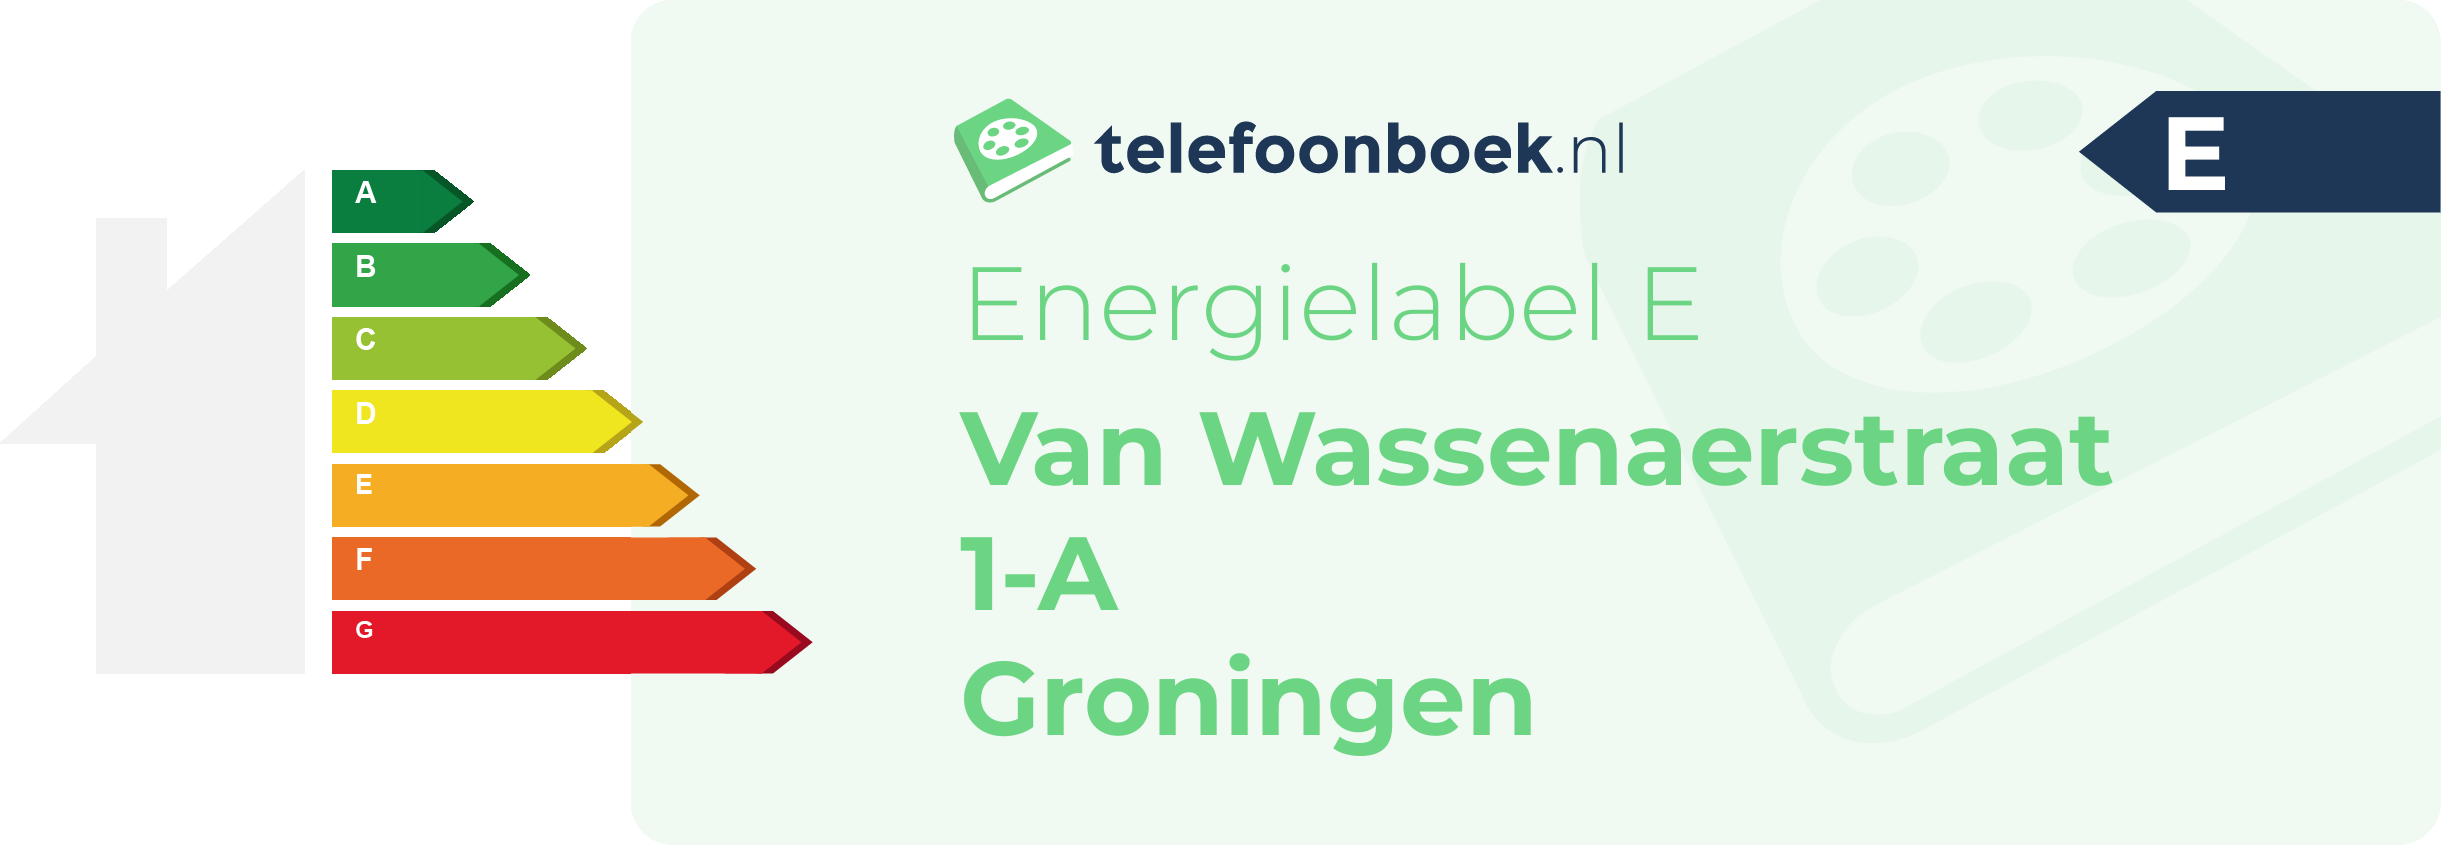 Energielabel Van Wassenaerstraat 1-A Groningen